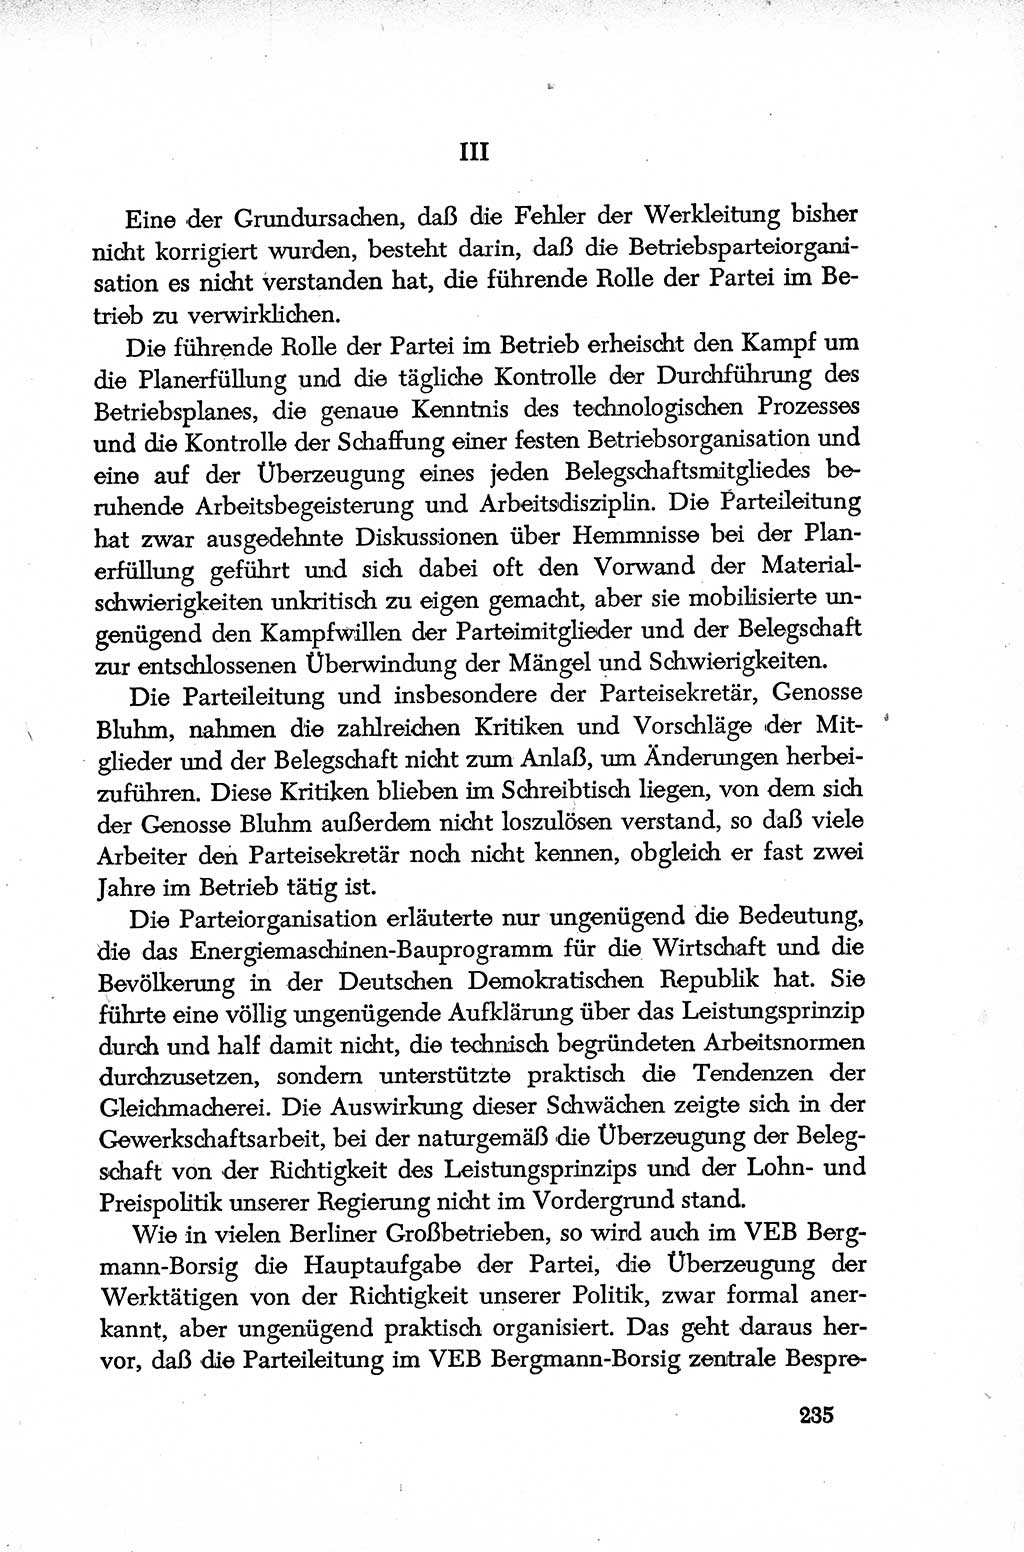 Dokumente der Sozialistischen Einheitspartei Deutschlands (SED) [Deutsche Demokratische Republik (DDR)] 1952-1953, Seite 235 (Dok. SED DDR 1952-1953, S. 235)